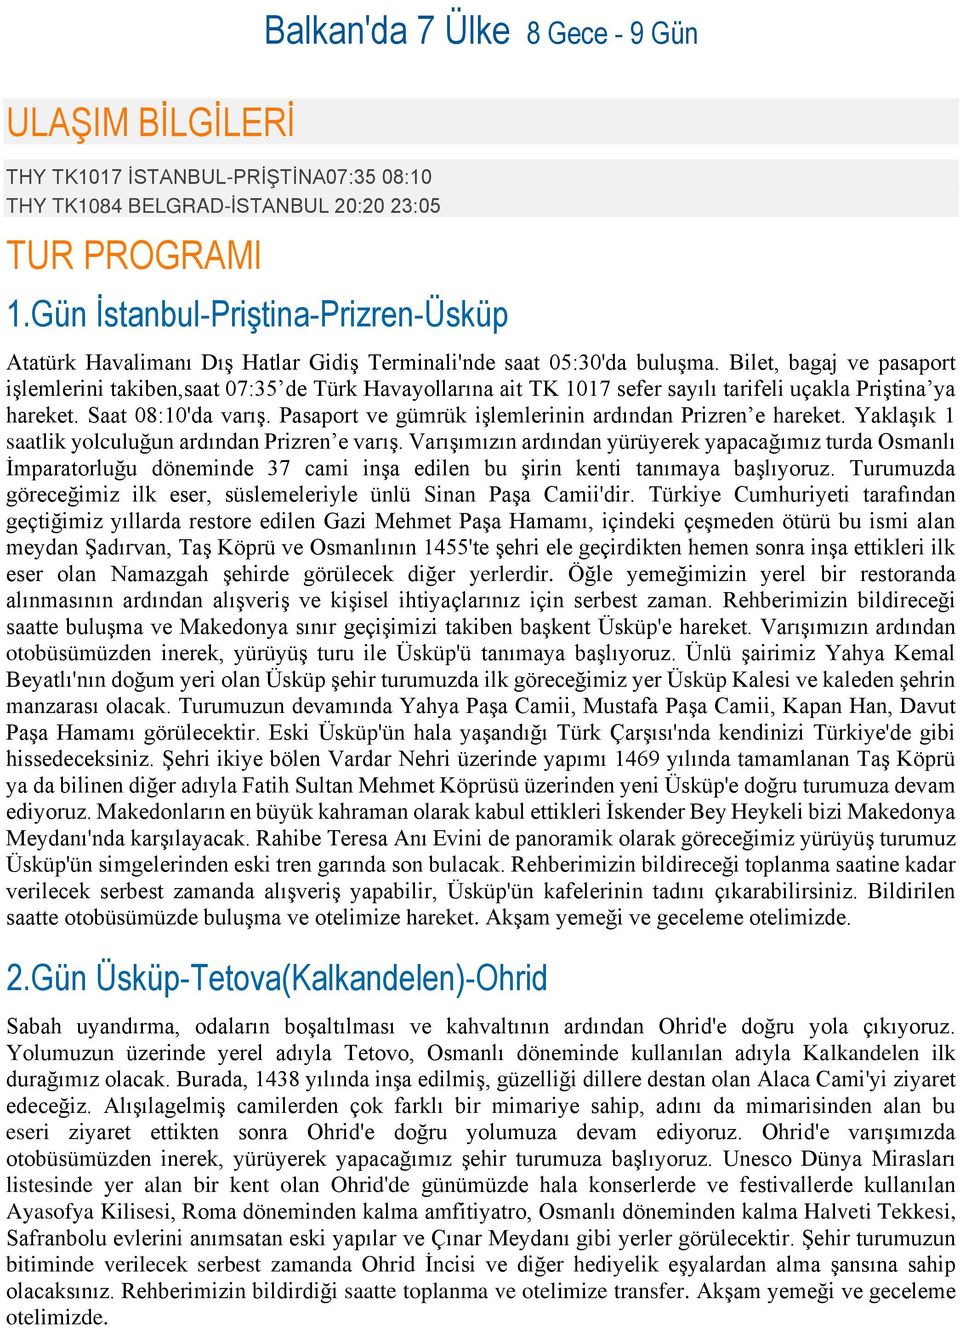 Bilet, bagaj ve pasaport işlemlerini takiben,saat 07:35 de Türk Havayollarına ait TK 1017 sefer sayılı tarifeli uçakla Priştina ya hareket. Saat 08:10'da varış.